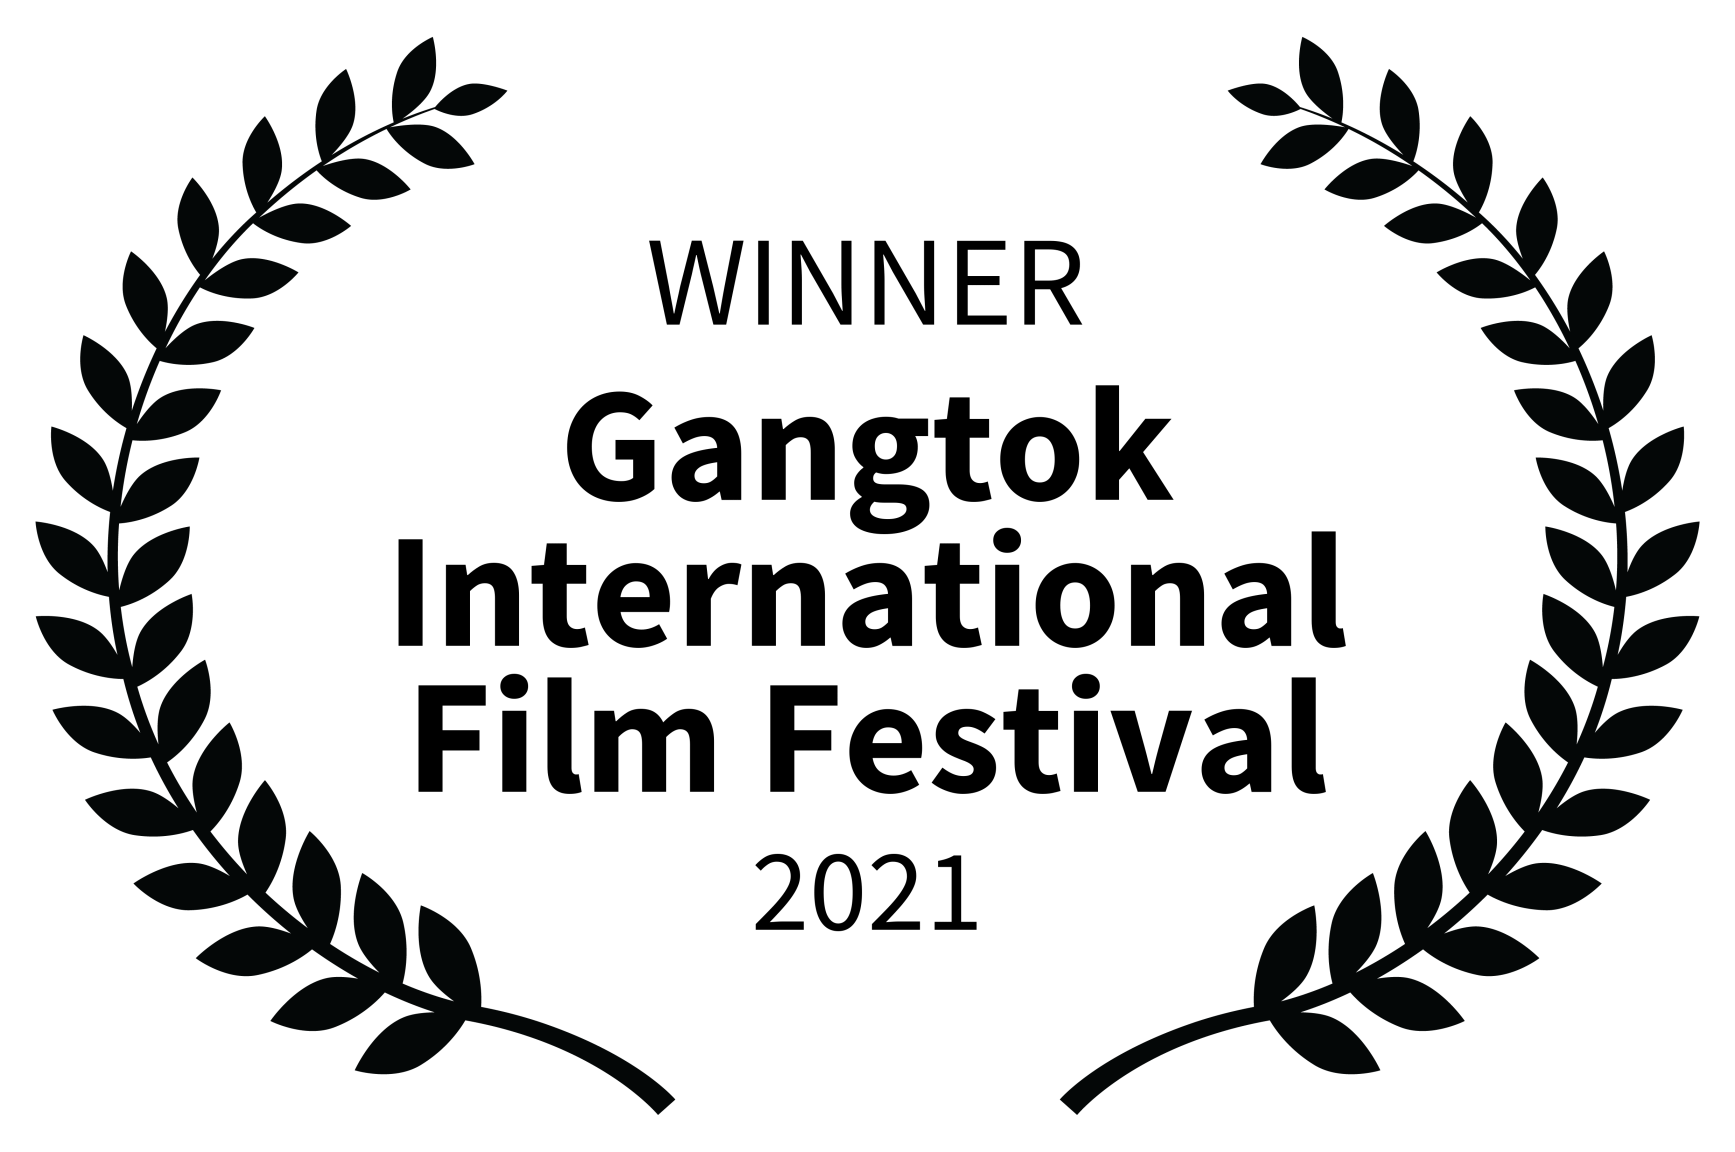 WINNER Gangtok International Film Festival 2021